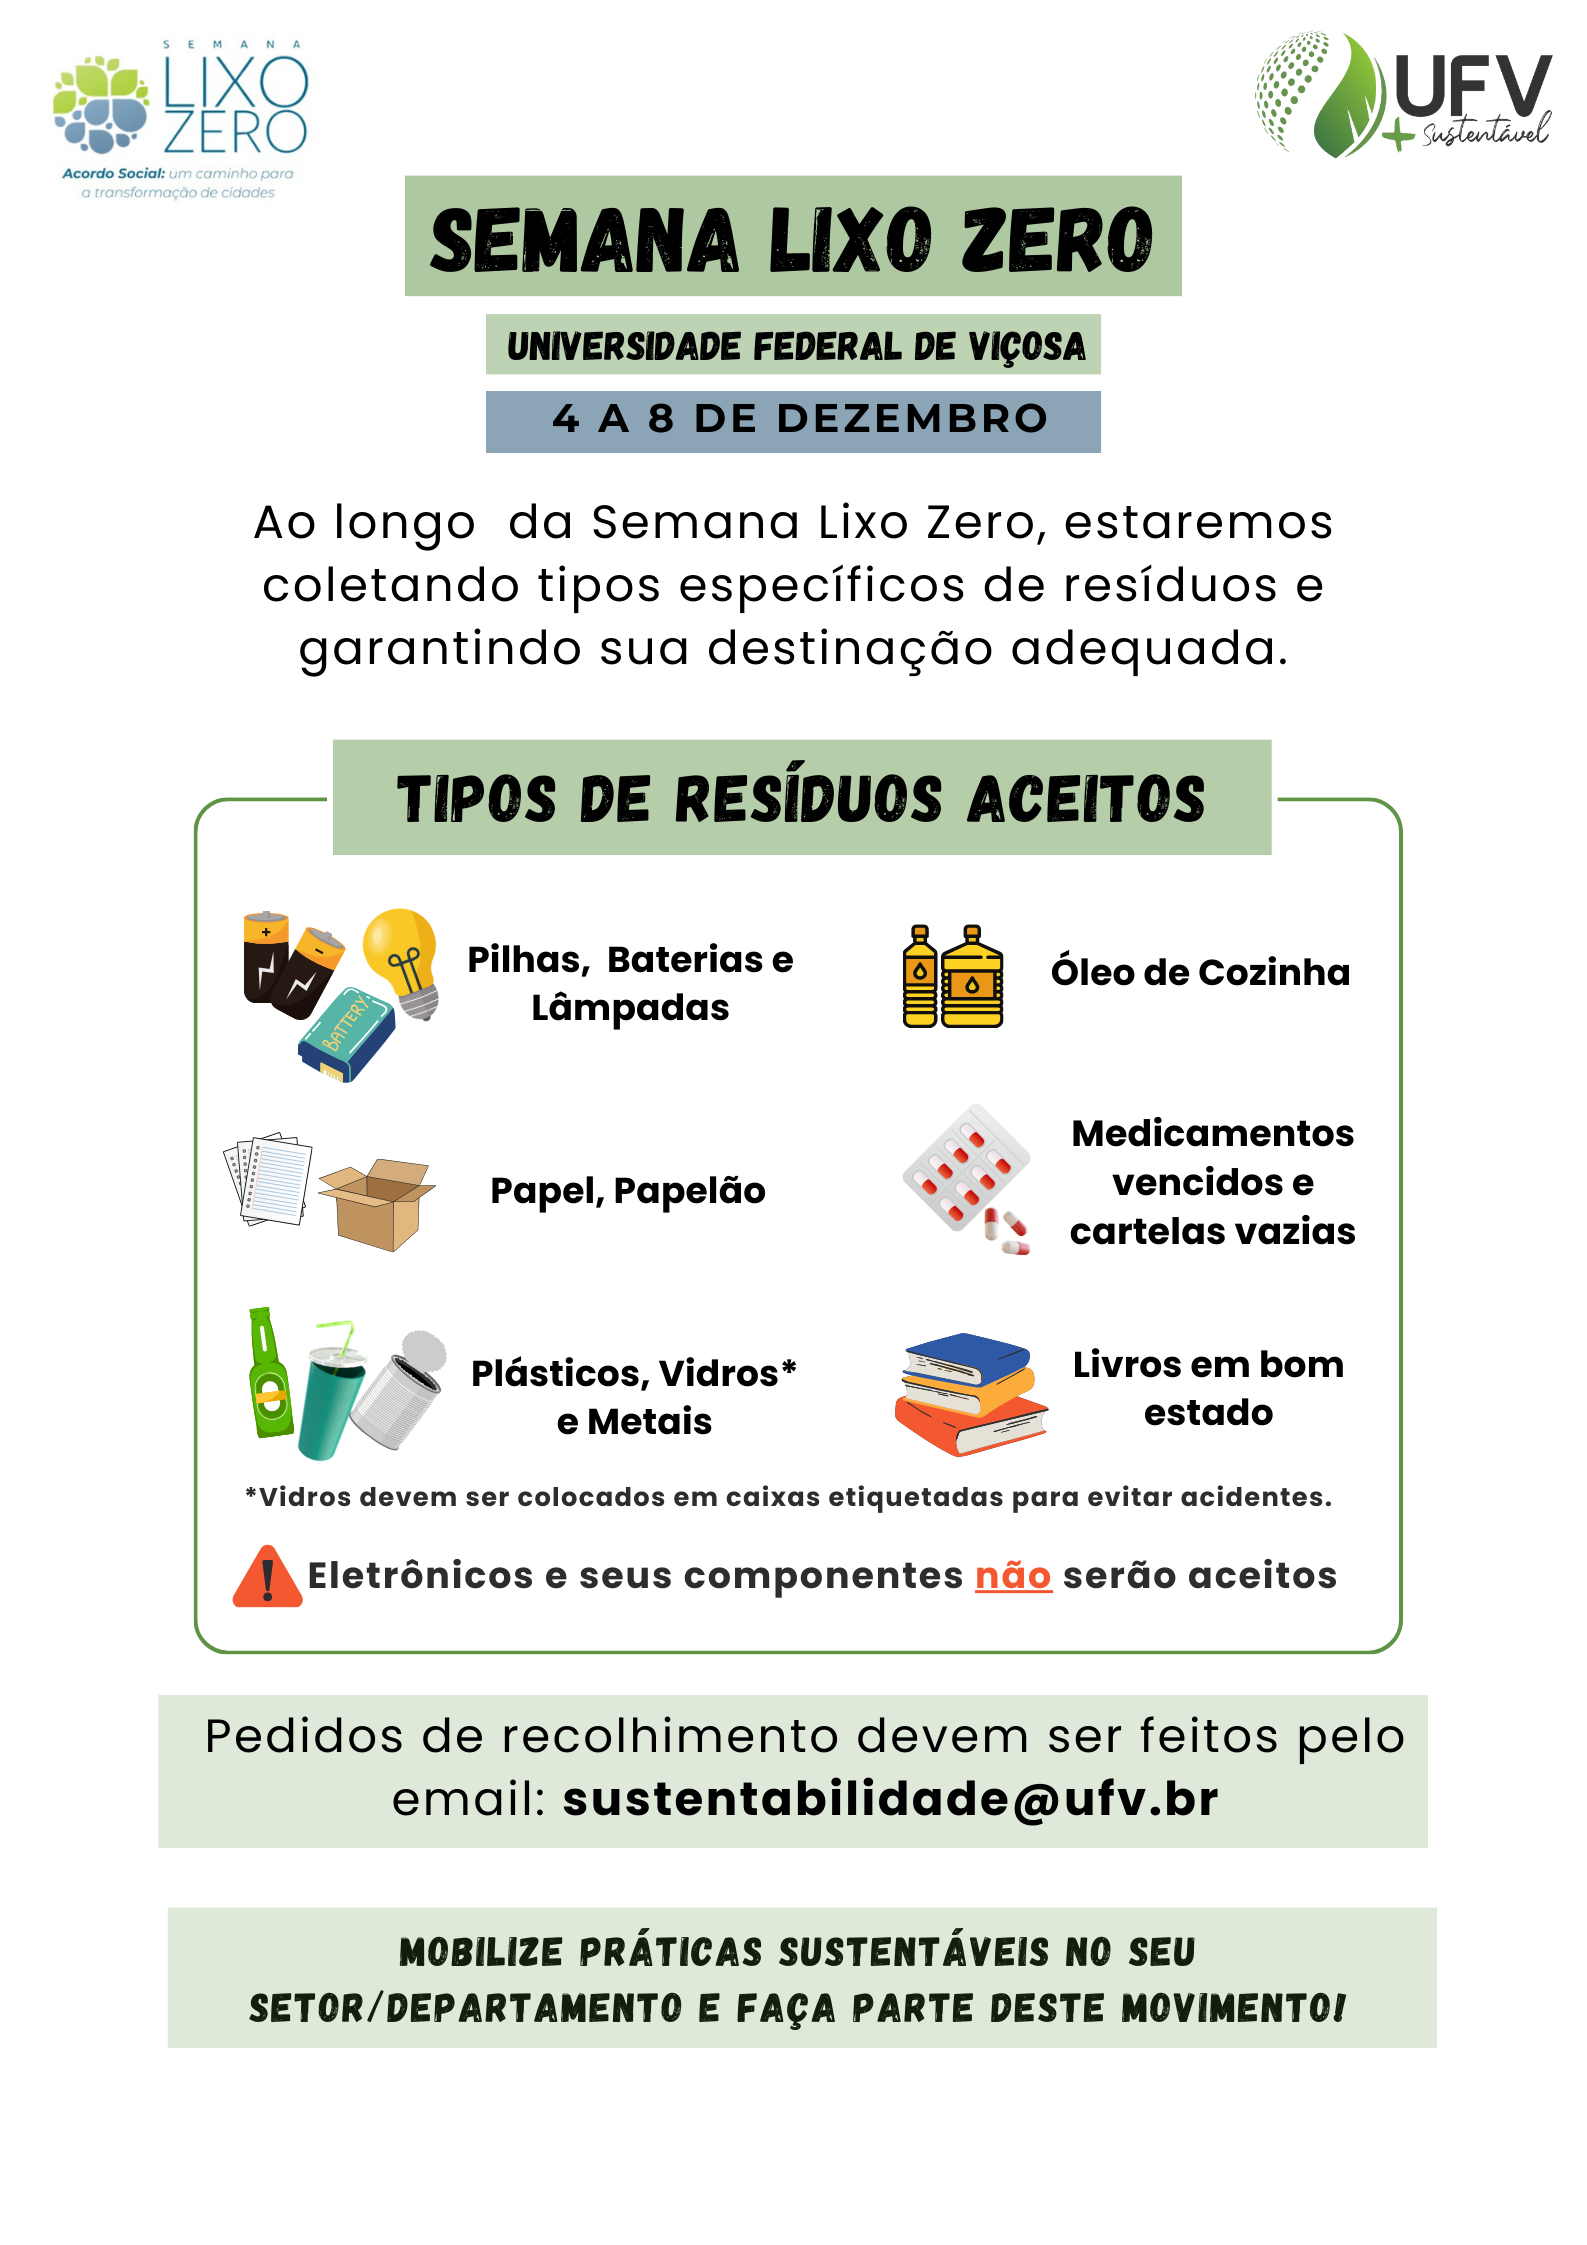 Cartaz com instruções sobre os tipos de resíduos aceitos para descarte; ao lado de cada tipo, um desenho ilustrativo. 